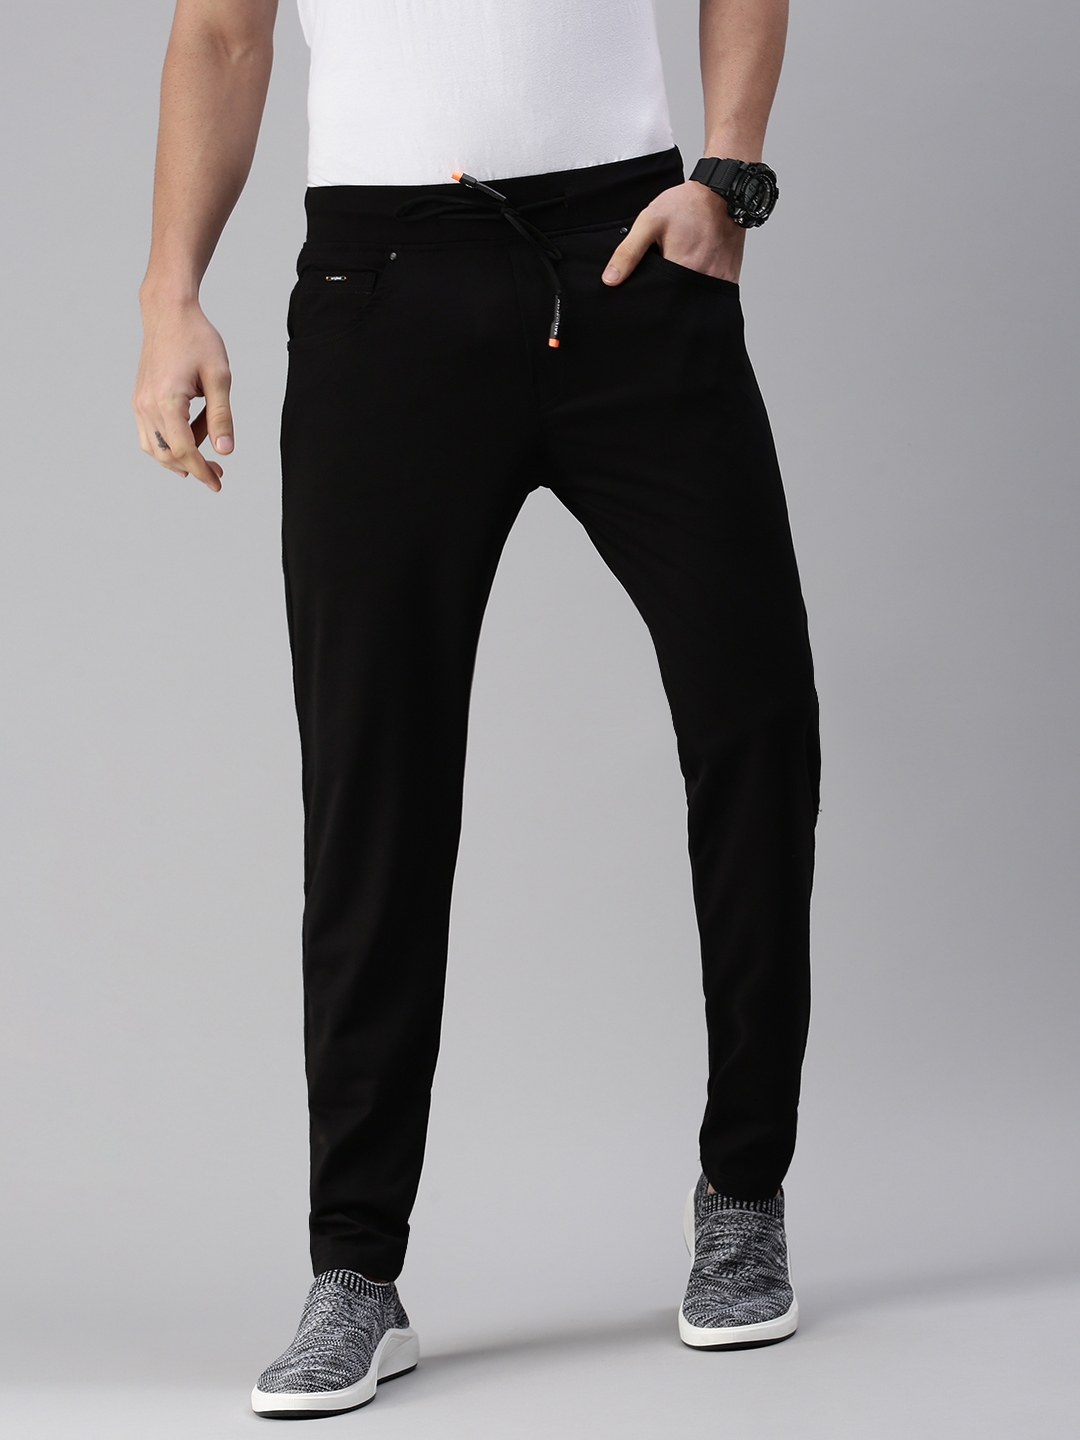 Showoff | SHOWOFF Men's Solid Cotton Black Regular Fit Track Pants